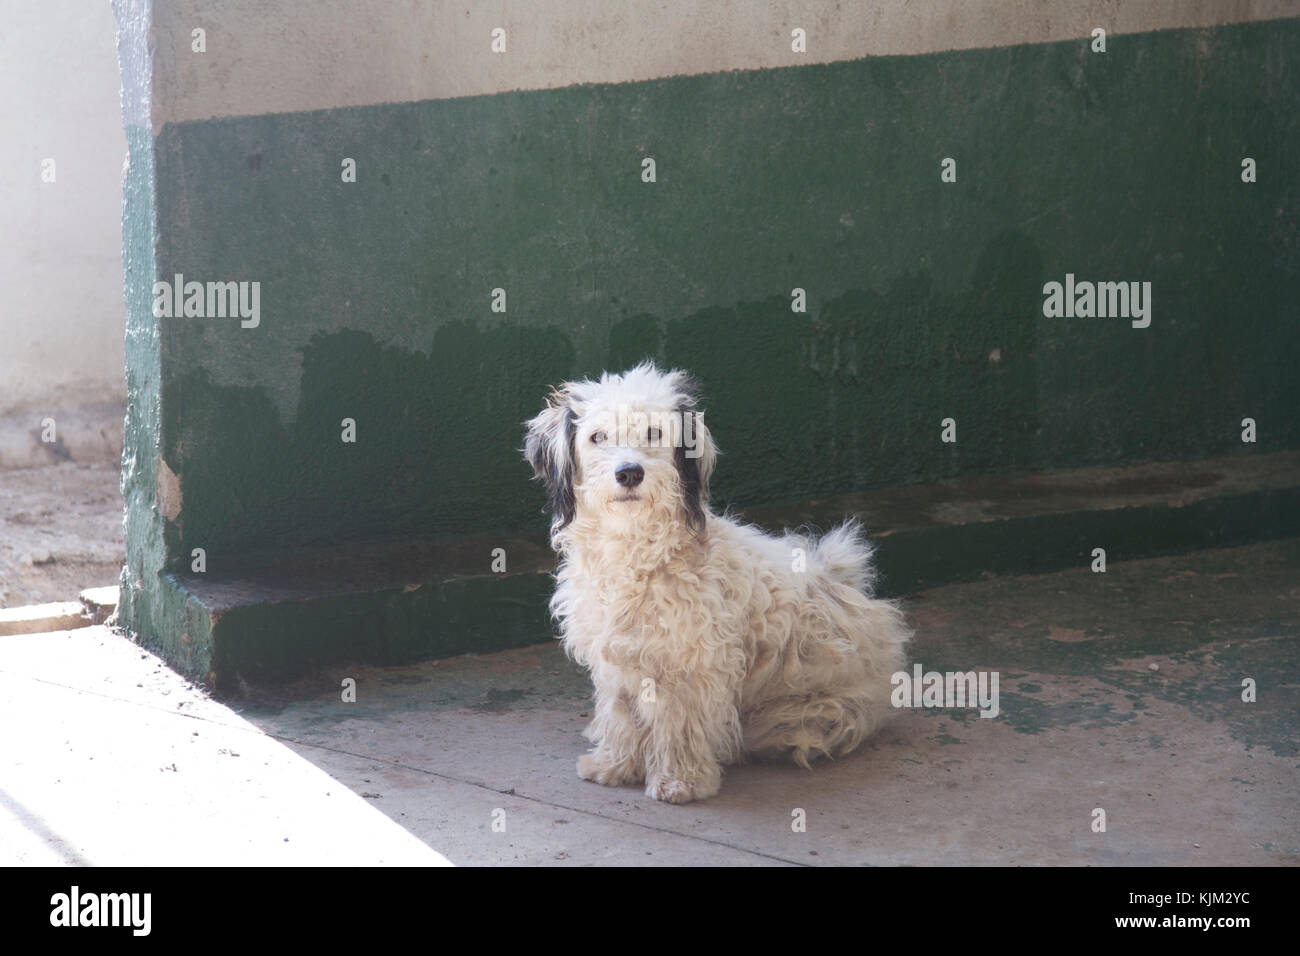 Schutzhund wartet im Tierheim auf Adoptivbeschasich. Foto von Nikki Attree Stockfoto